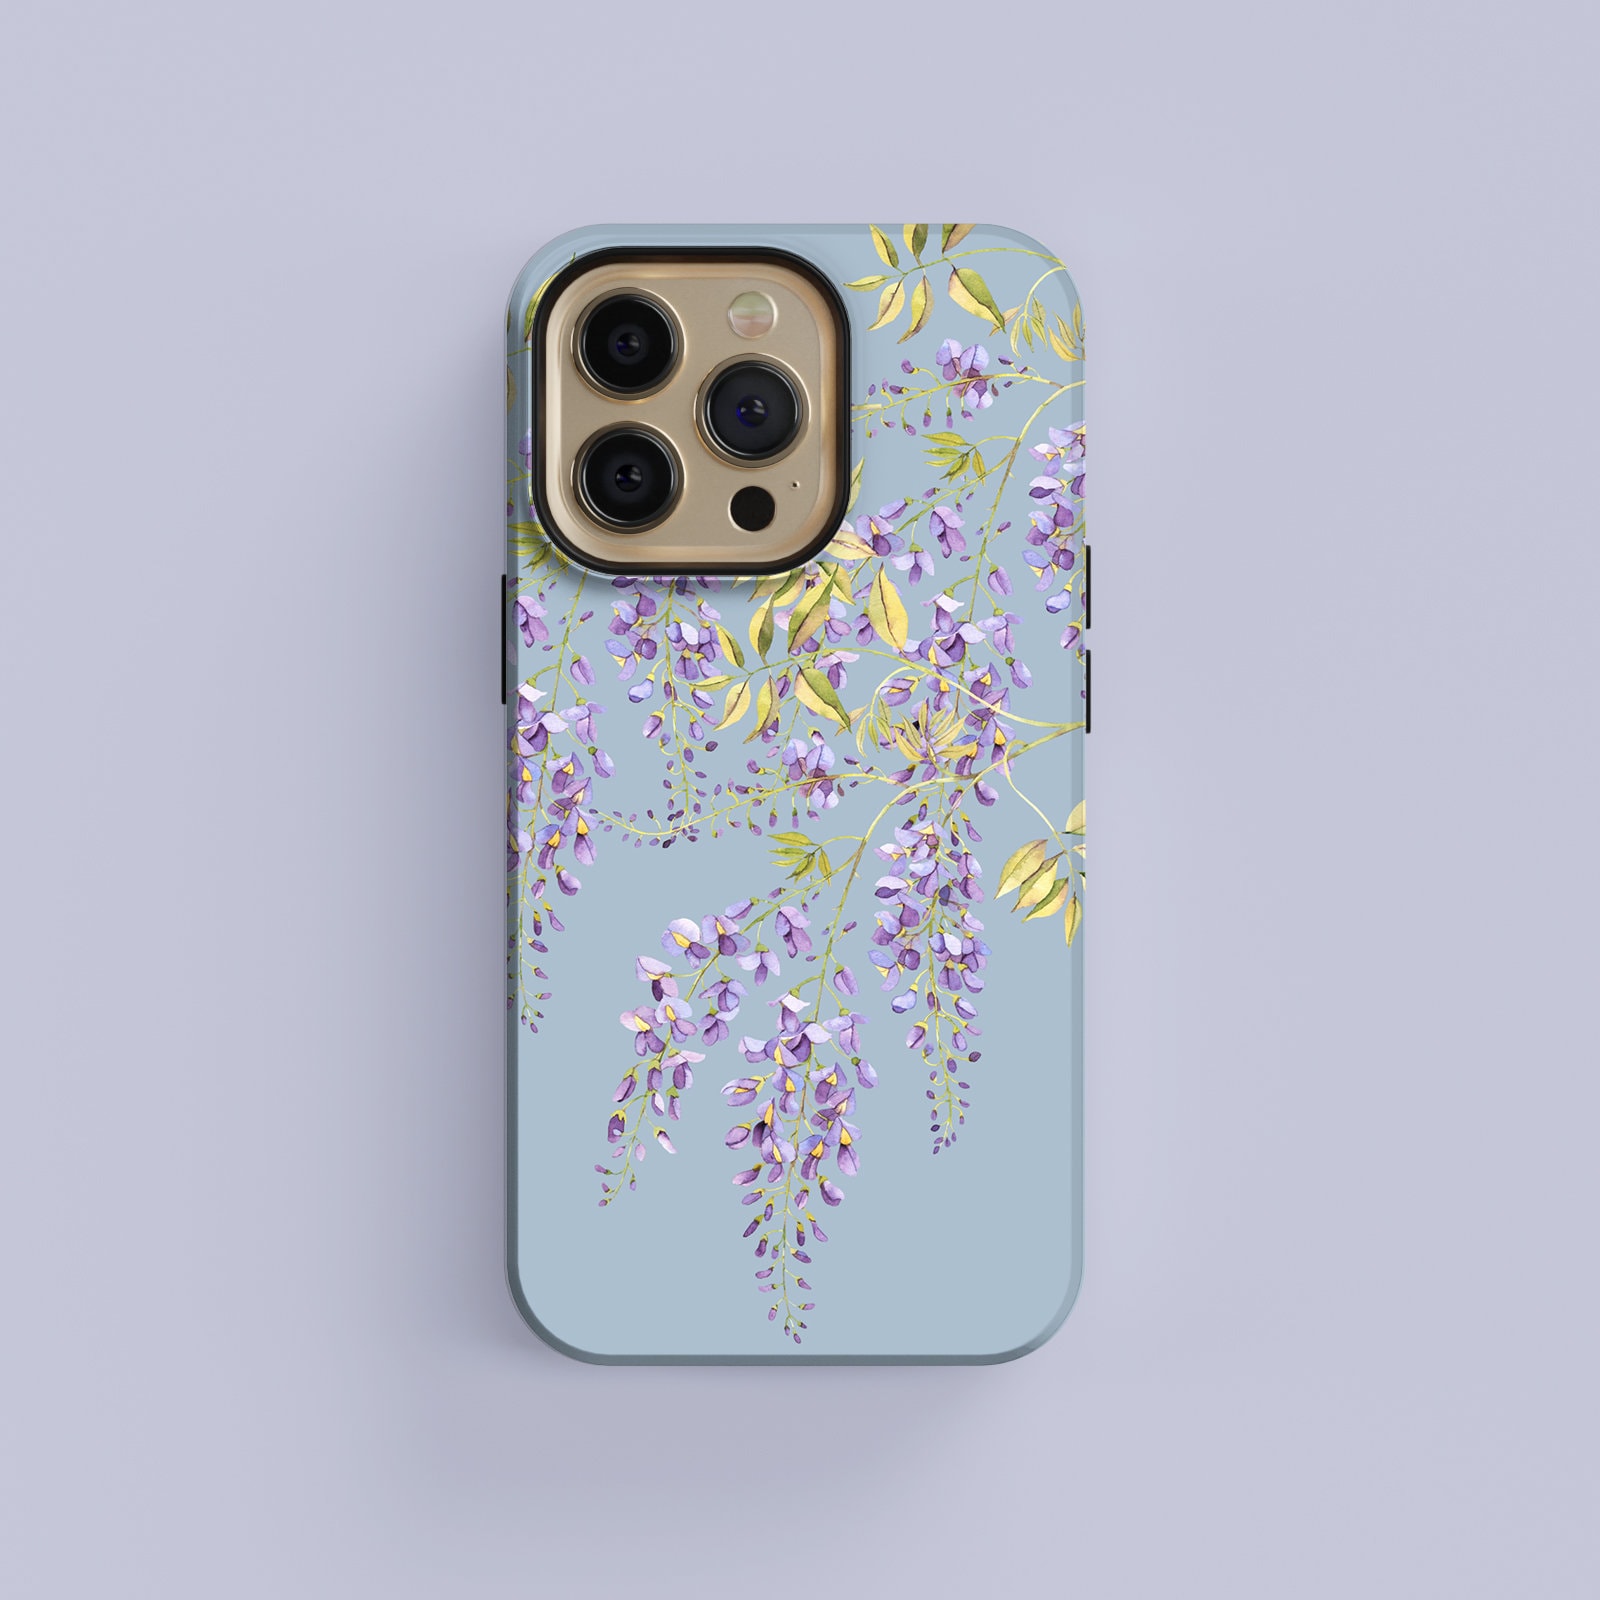 Designer Inspired Iphone Cases - Linn Style